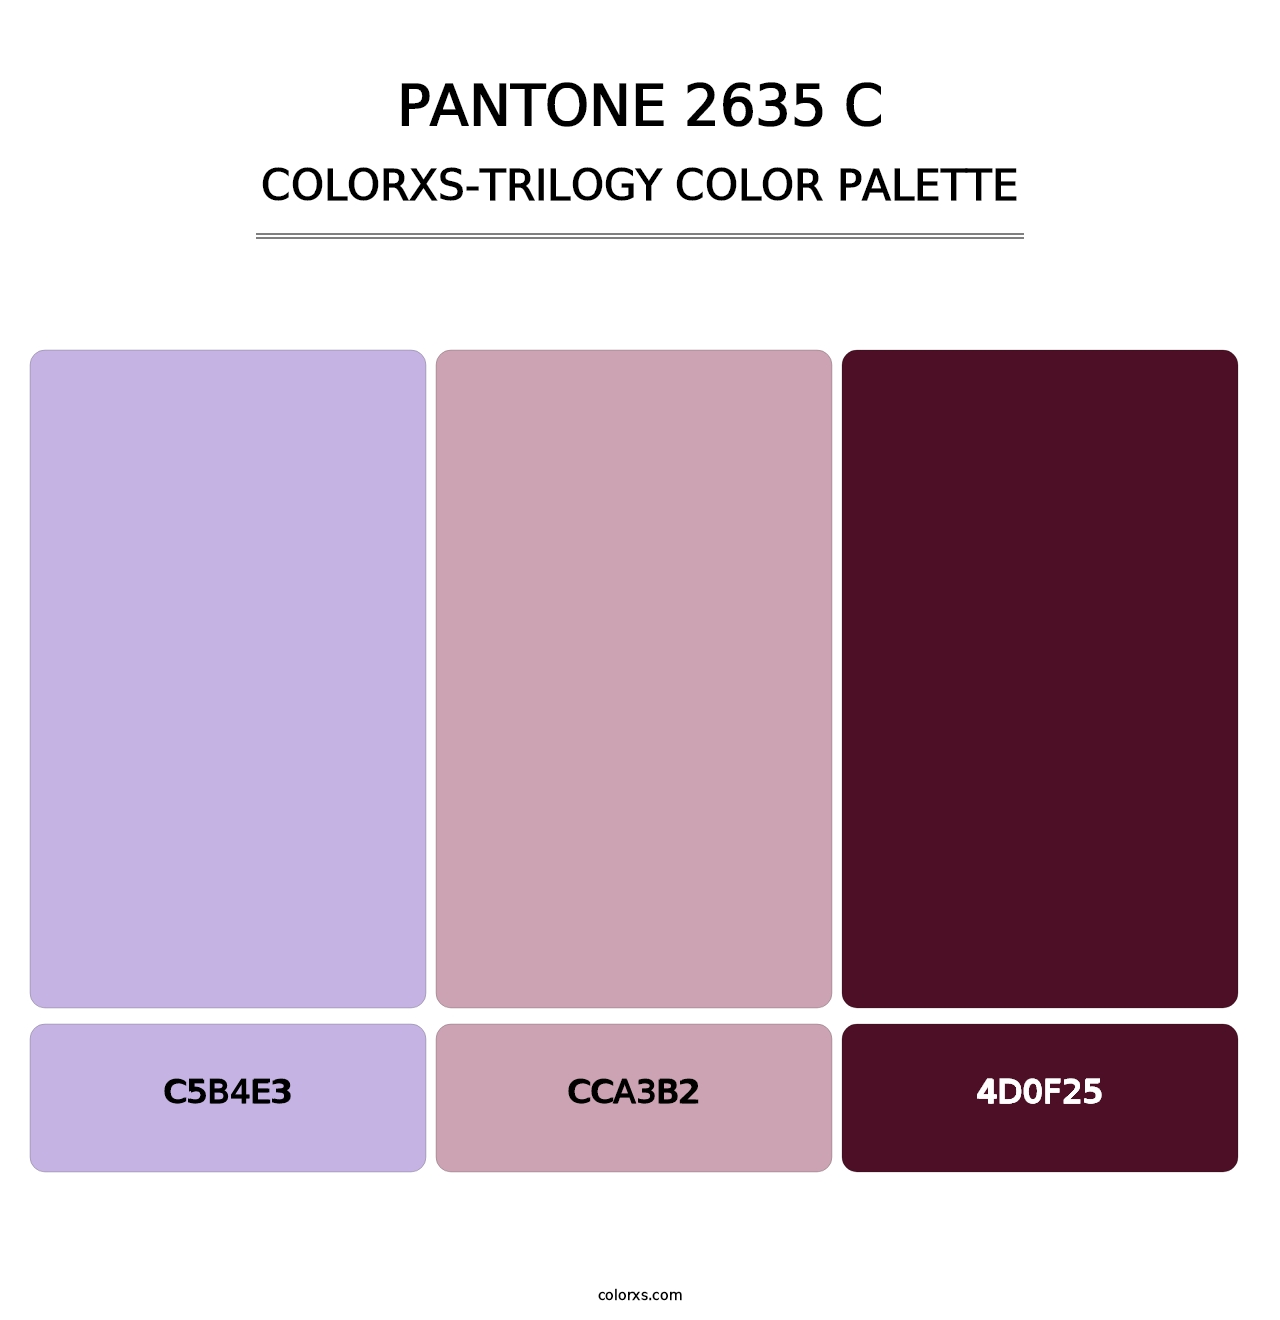 PANTONE 2635 C - Colorxs Trilogy Palette